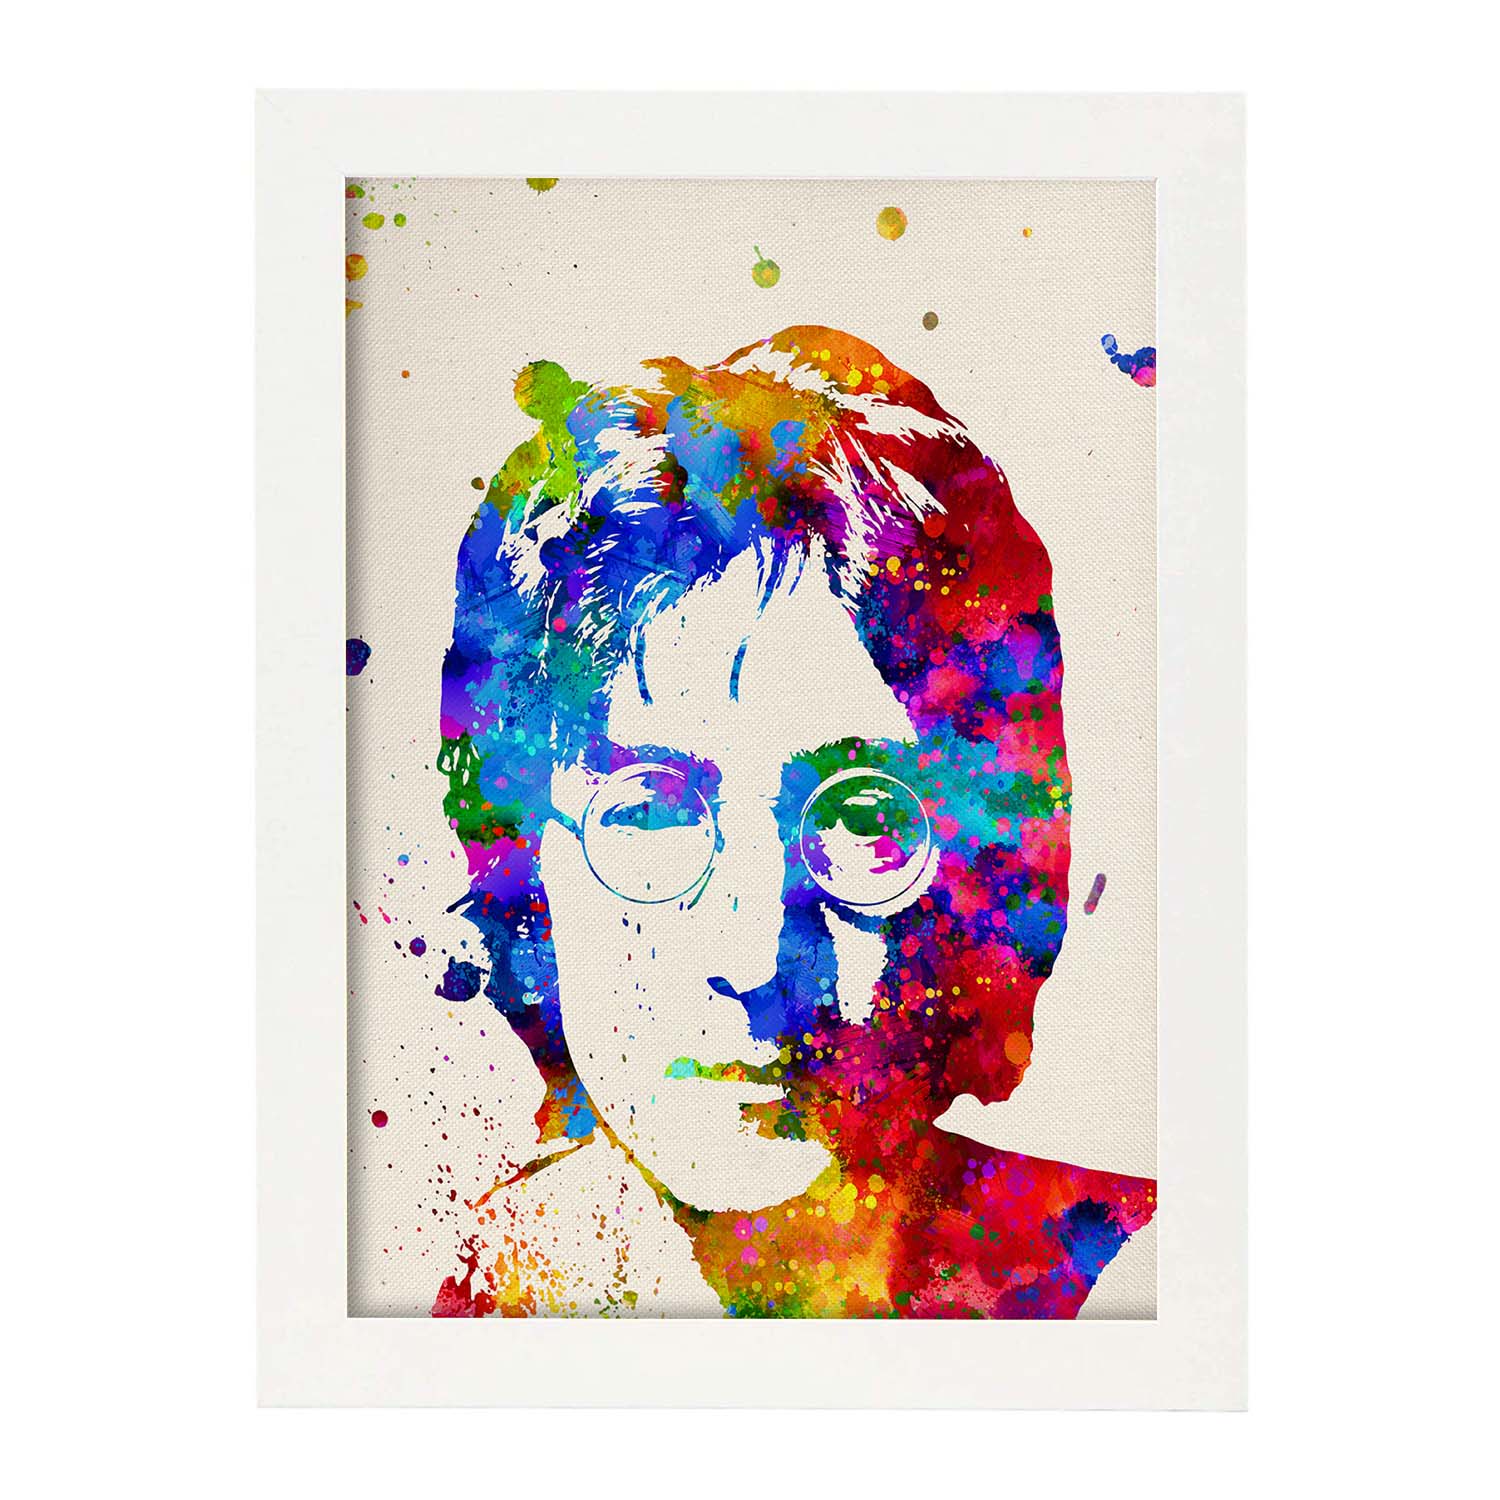 Poster imagen de John Lennon. Posters con diseño acuarela de famosos, actores, músicos-Artwork-Nacnic-A3-Marco Blanco-Nacnic Estudio SL